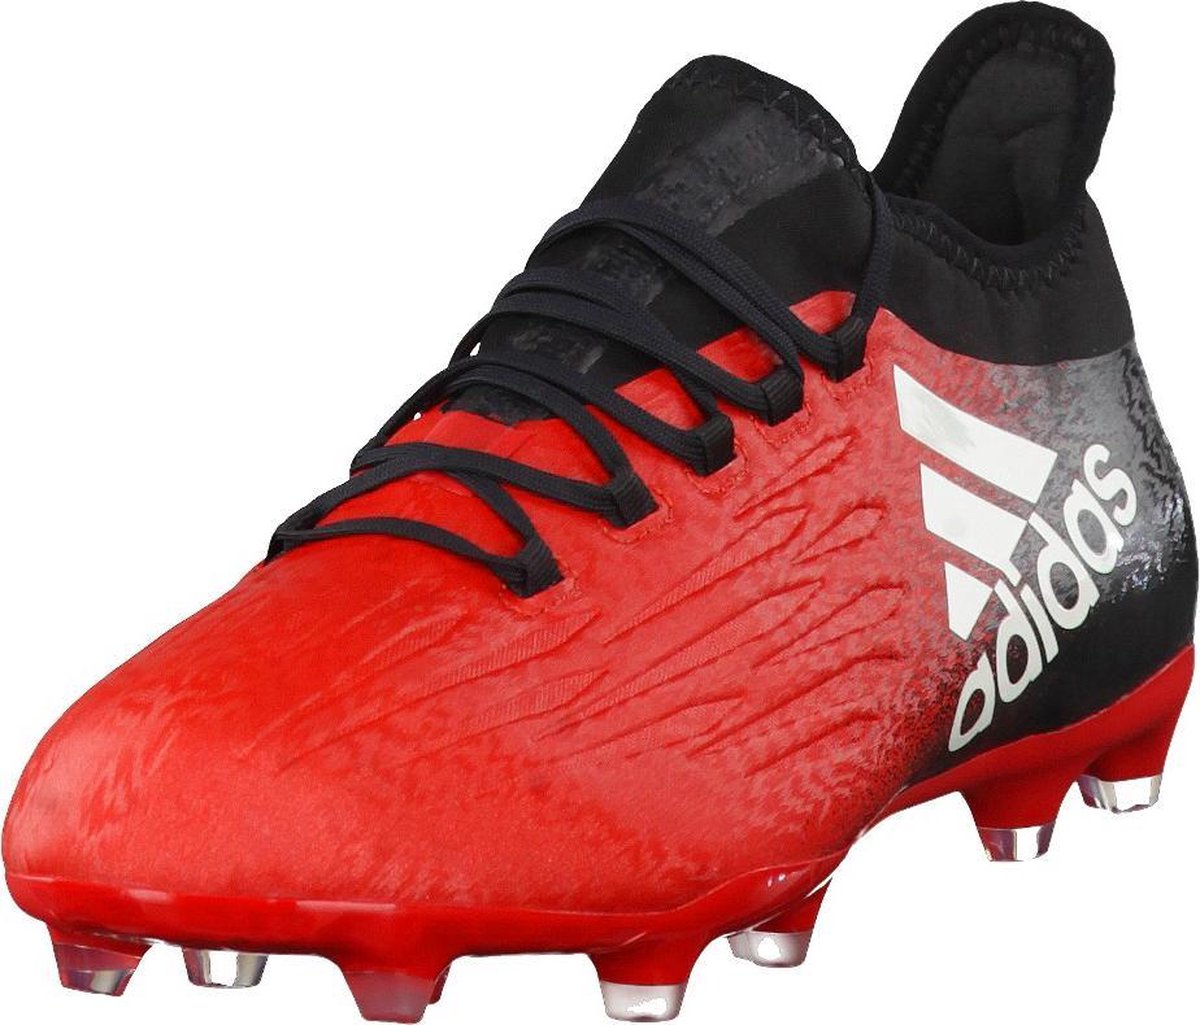 adidas - X 16.2 FG - Voetbalschoenen - Mannen - Rood/Zwart - maat 41 1/3 |  bol